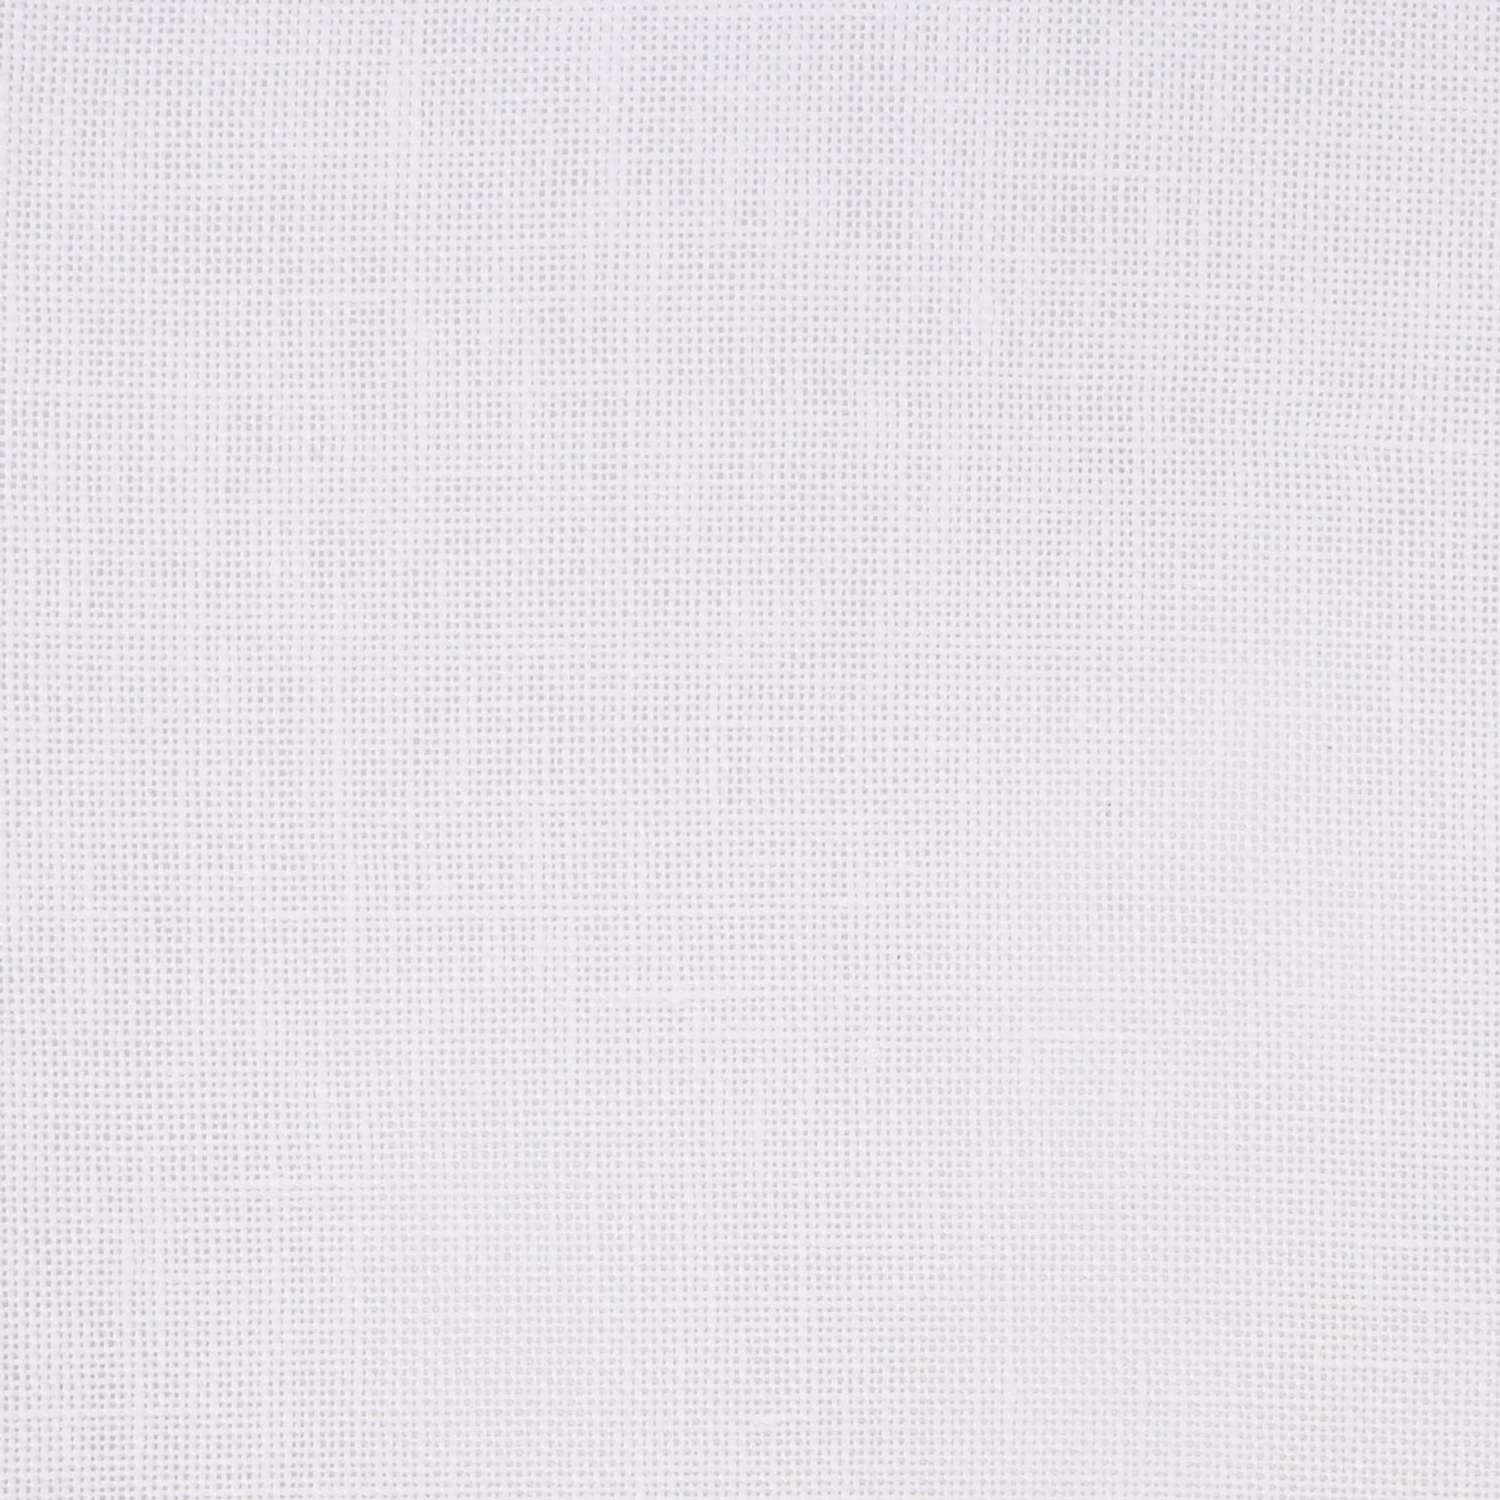 Канва Zweigart для вышивания шитья и рукоделия 28ct 50х70 см белая - фото 3